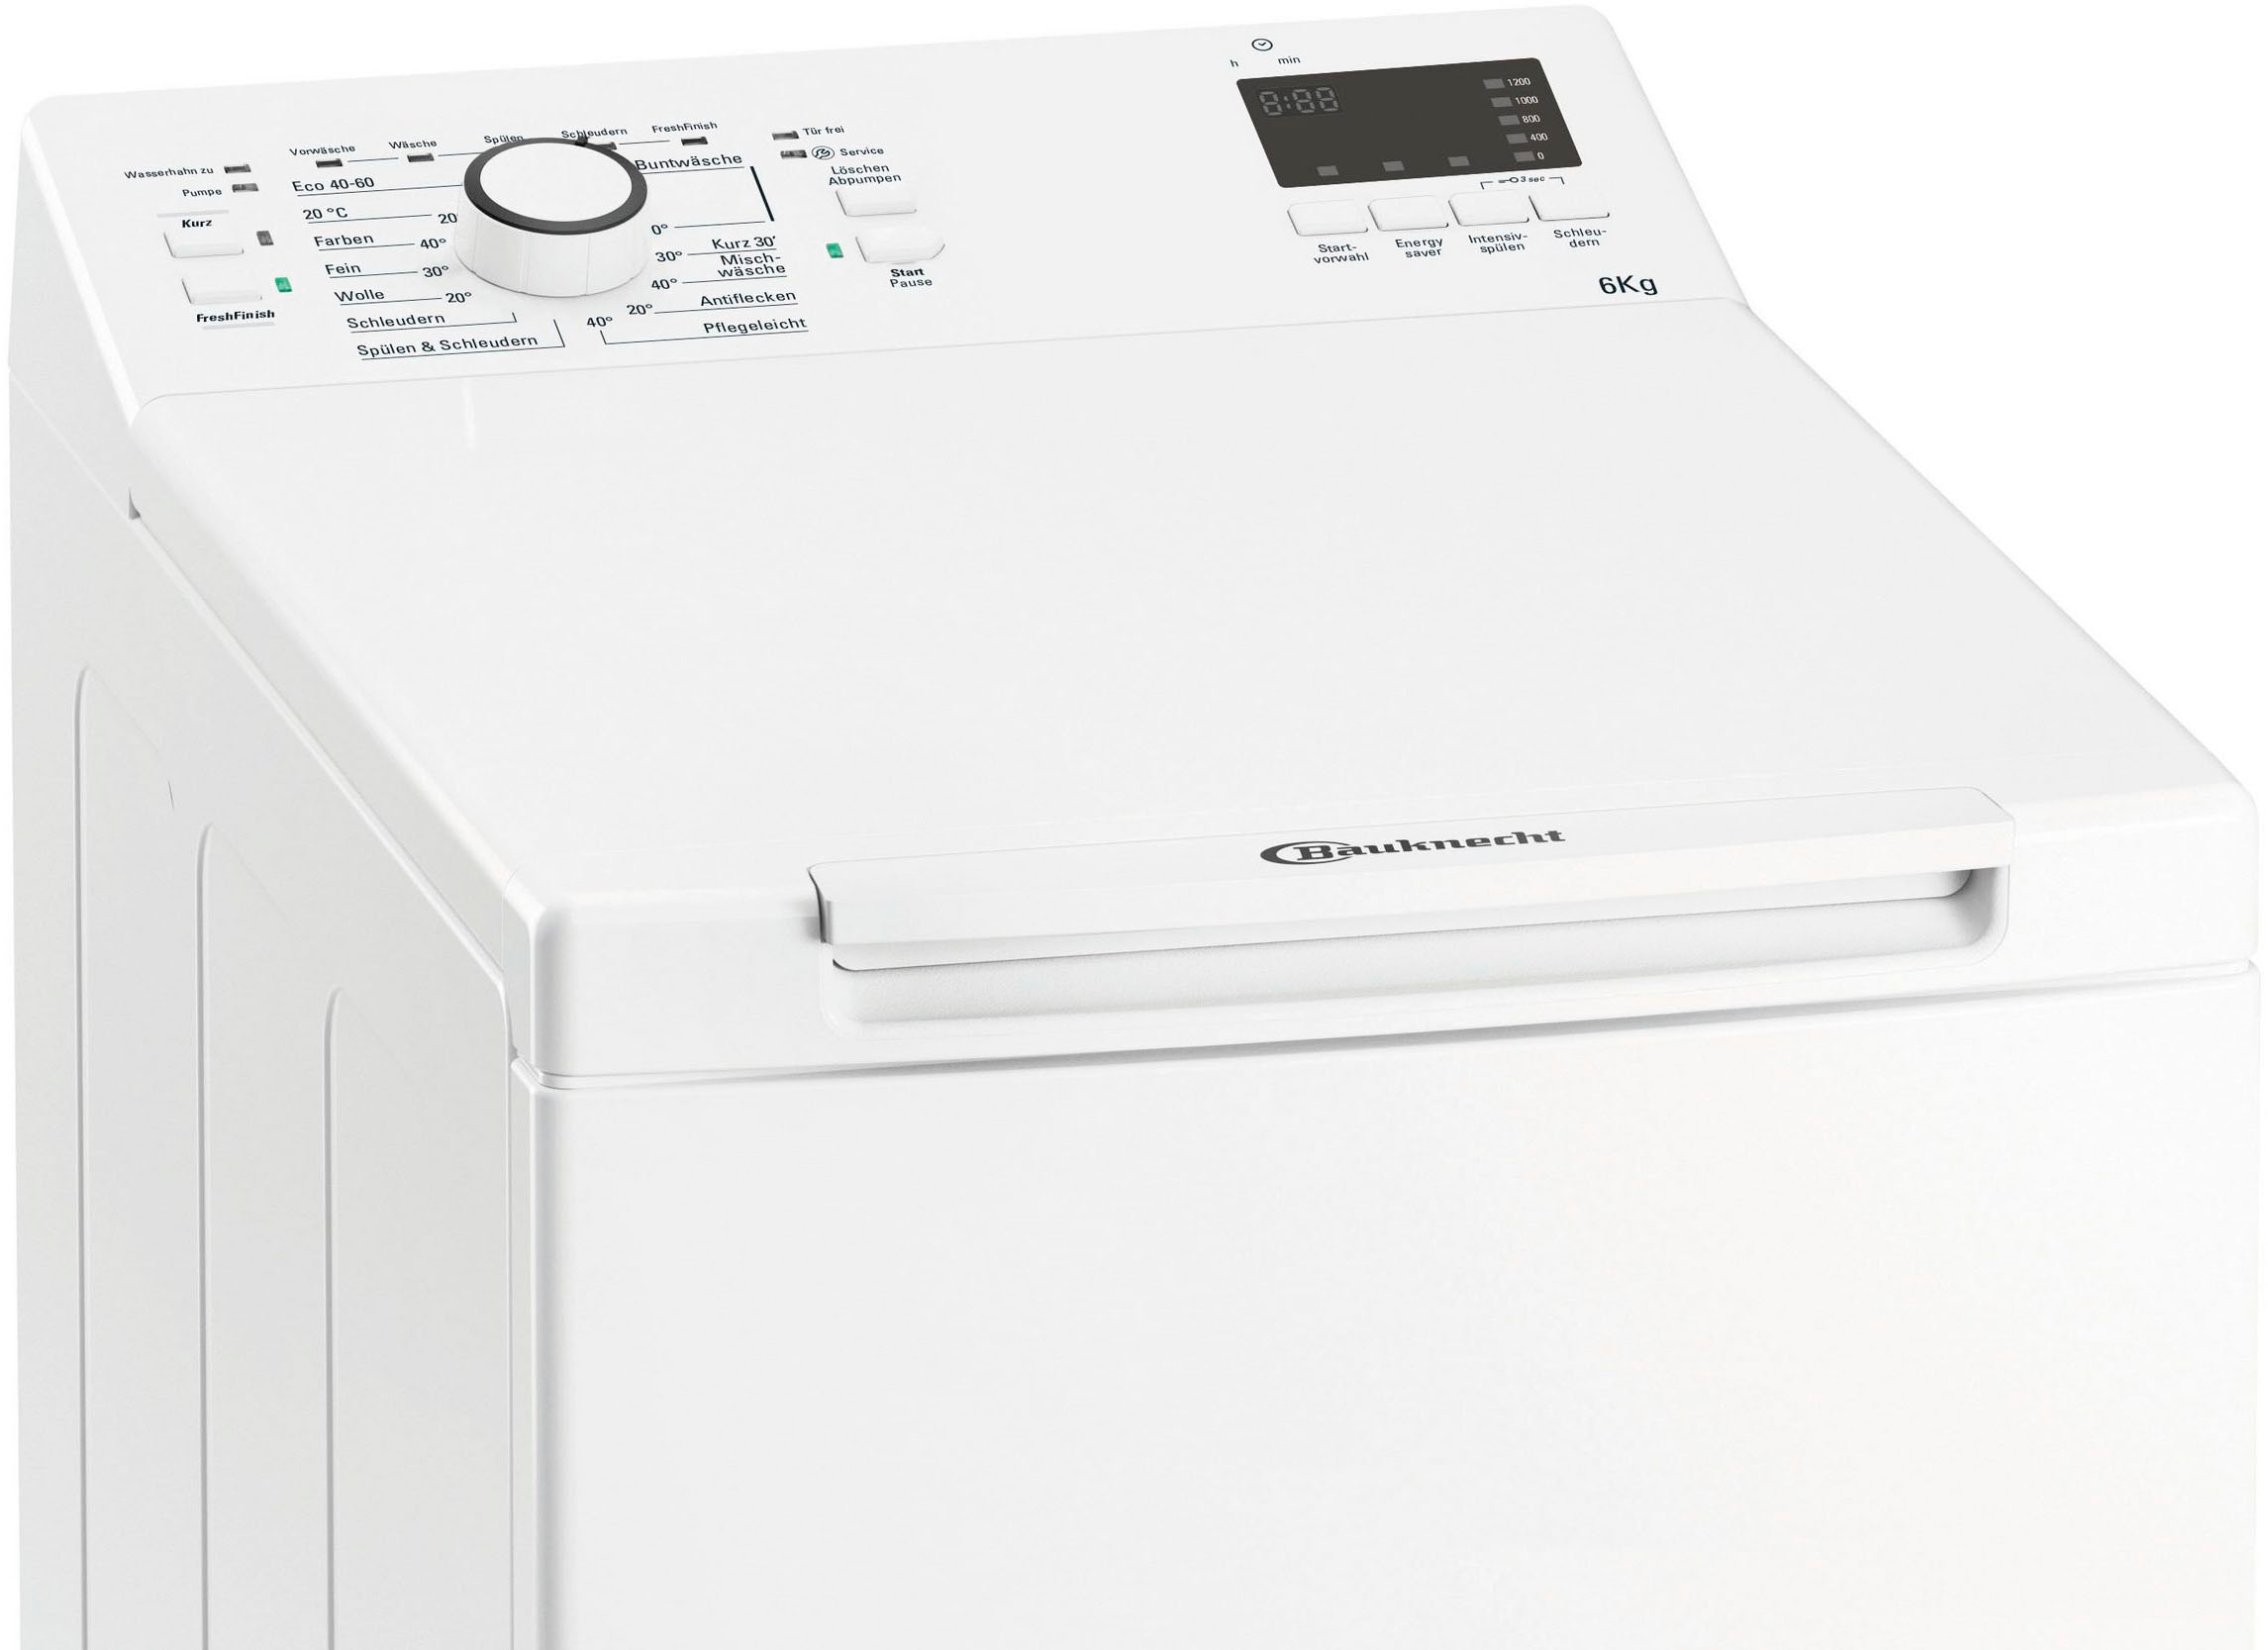 BAUKNECHT Waschmaschine Toplader »WAT PRIME 652 DI N«, WAT PRIME 652 DI N, 6 kg, 1200 U/min